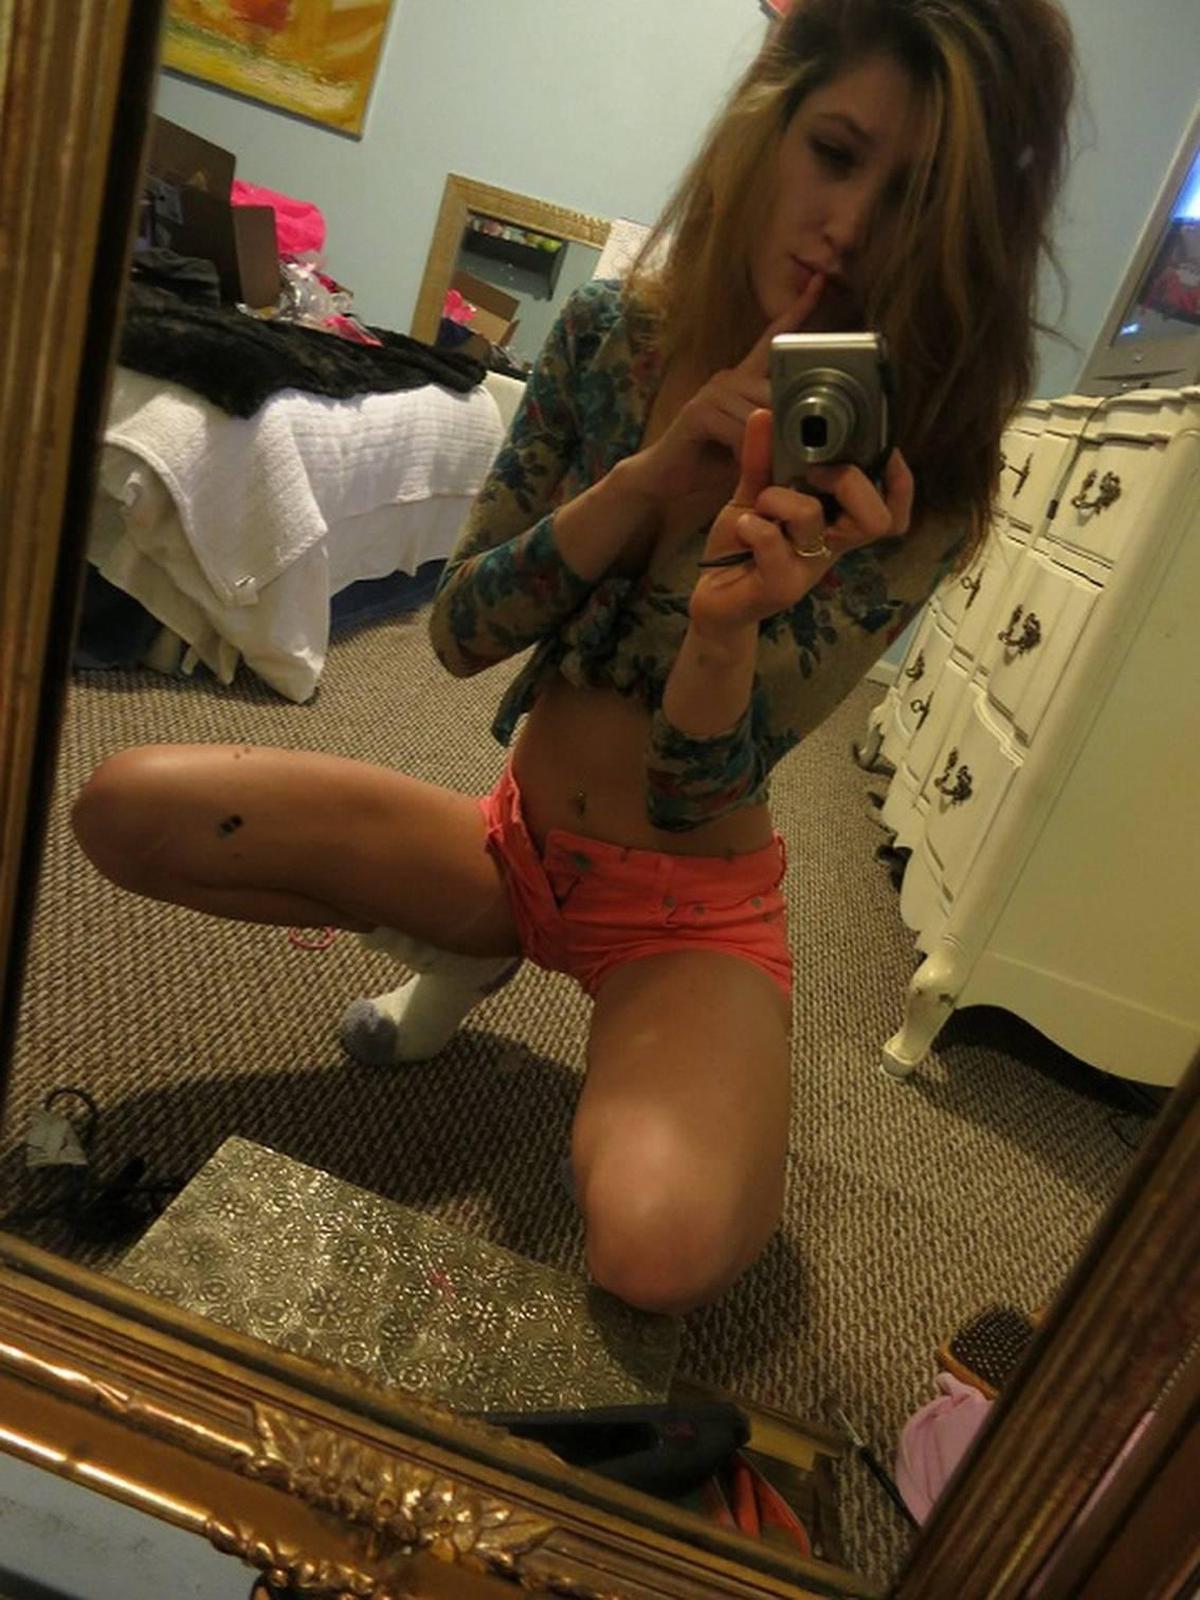 النحيلة الأمريكية Reddit Selfie Girl Home Made Nudes